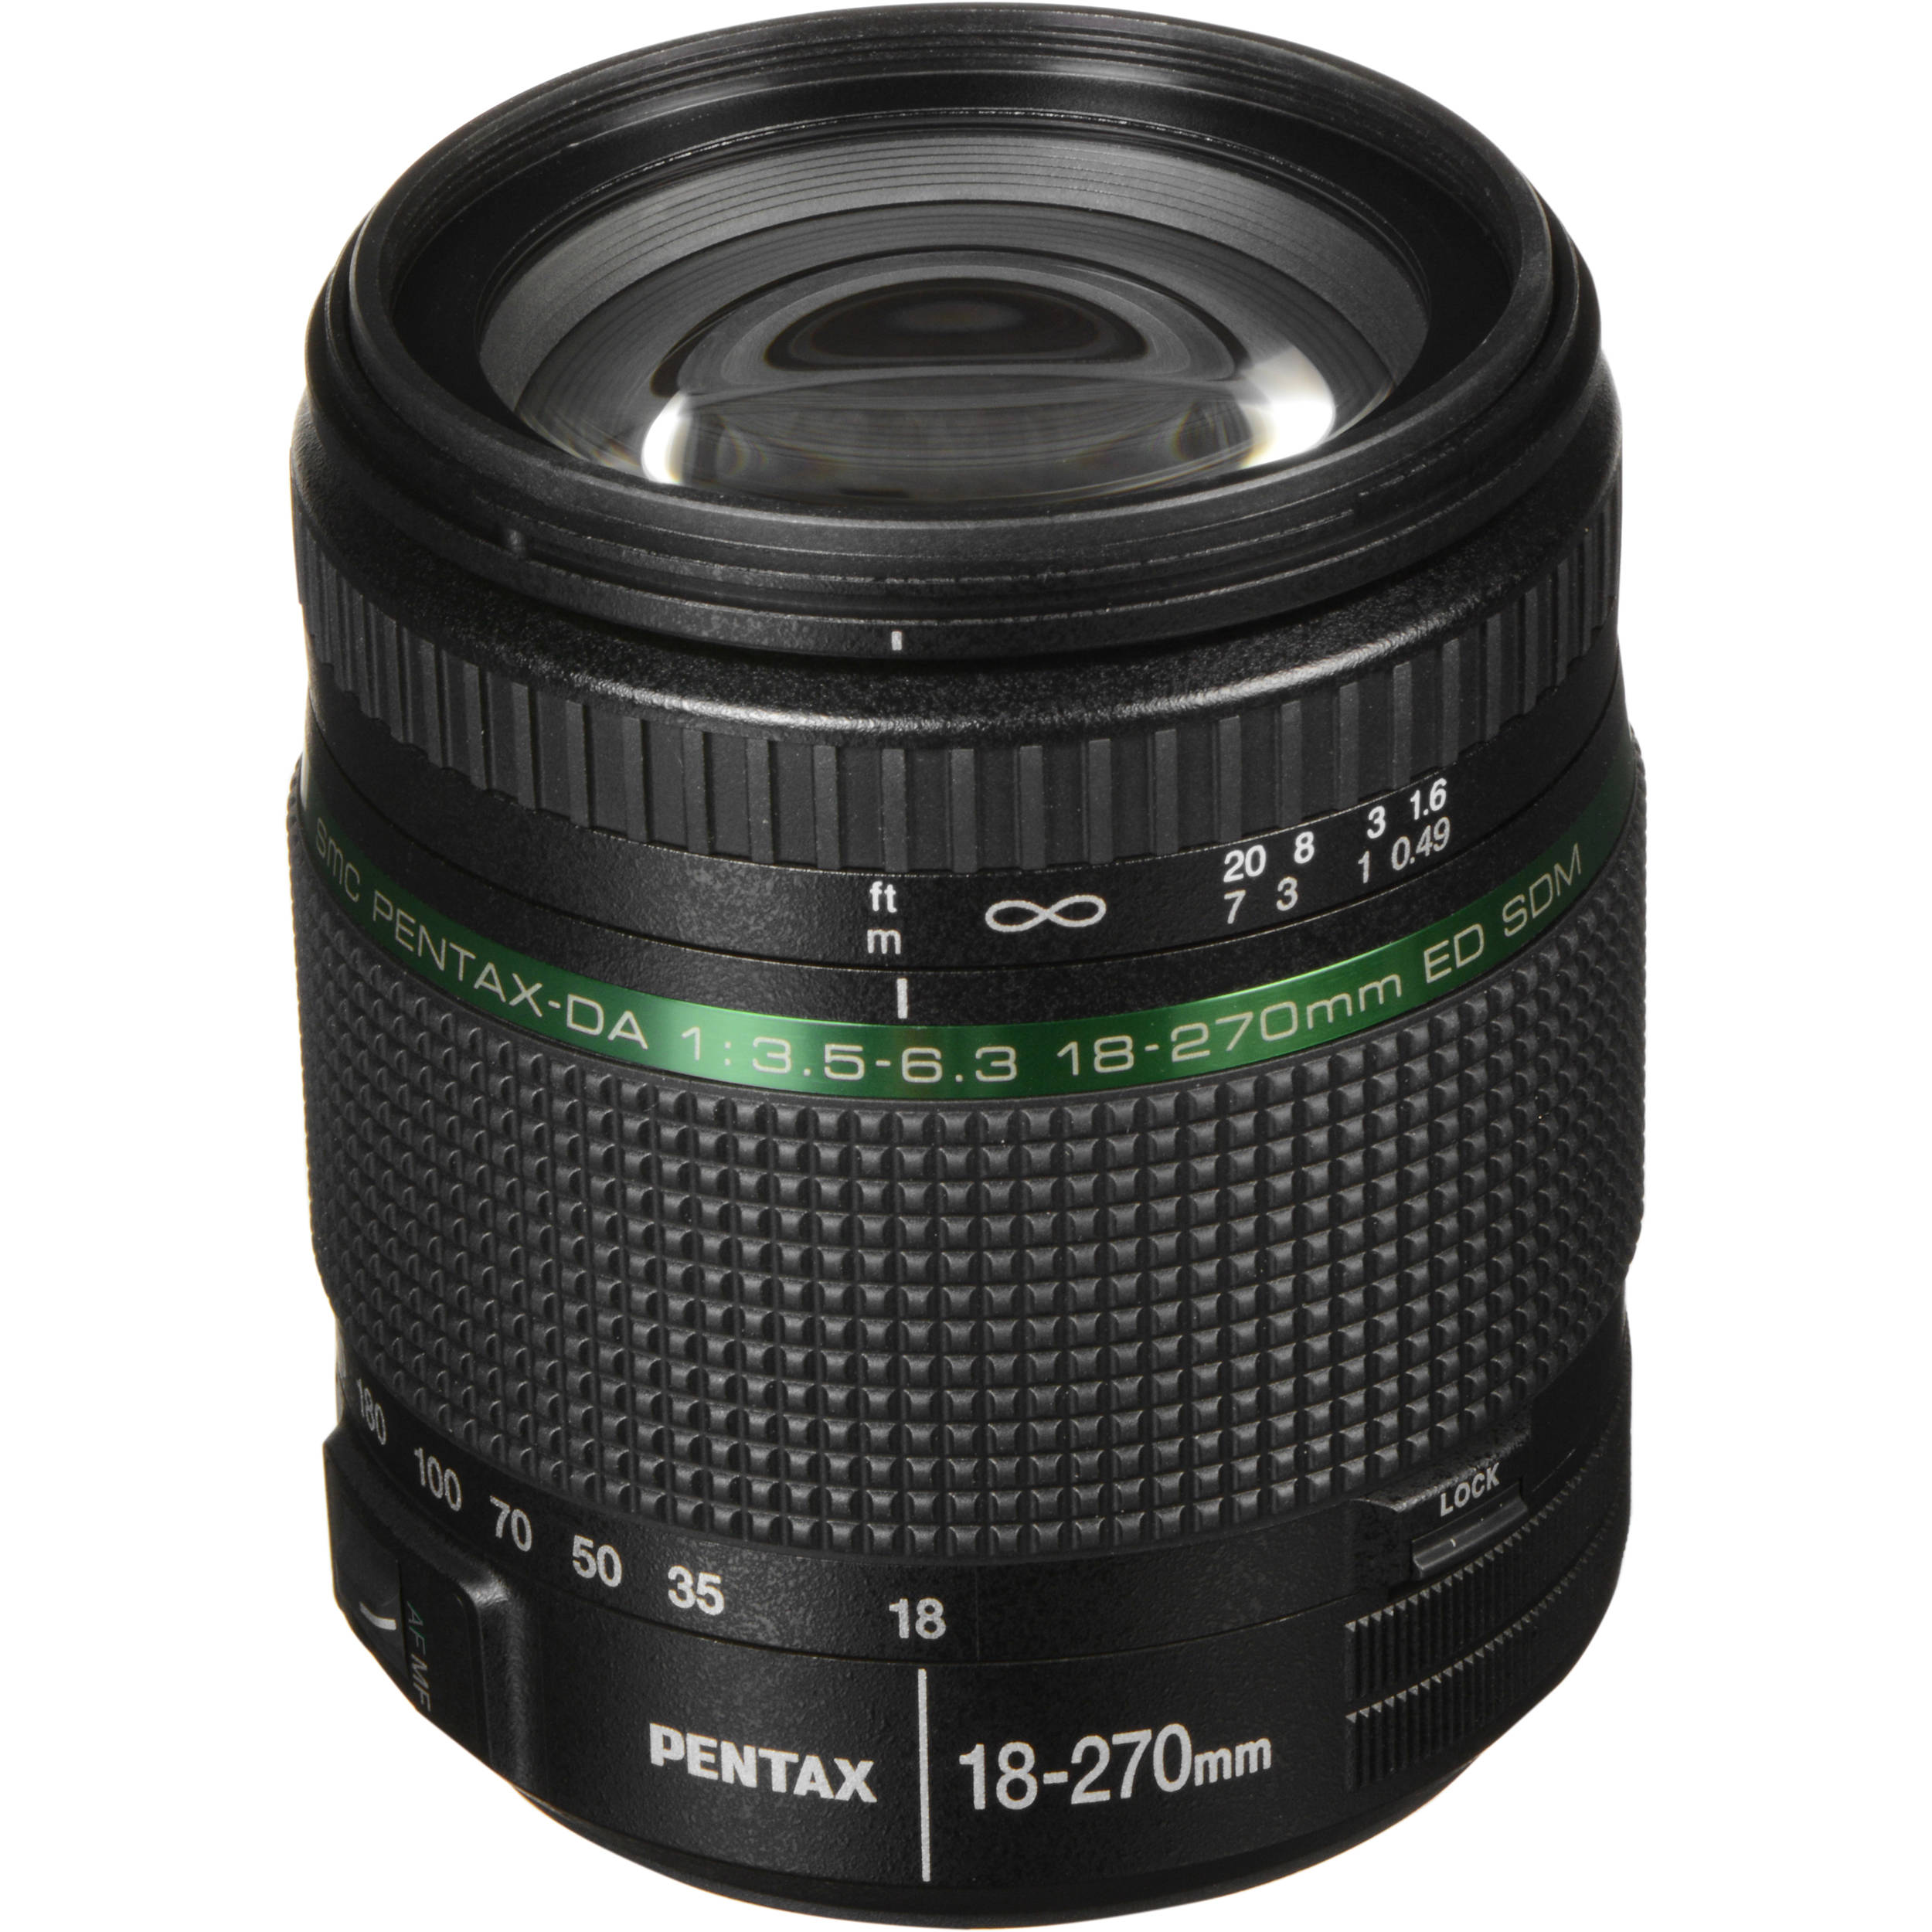 Pentax Smc Pentax Da 18 270mm F 3 5 6 3 Ed Sdm Lens B H